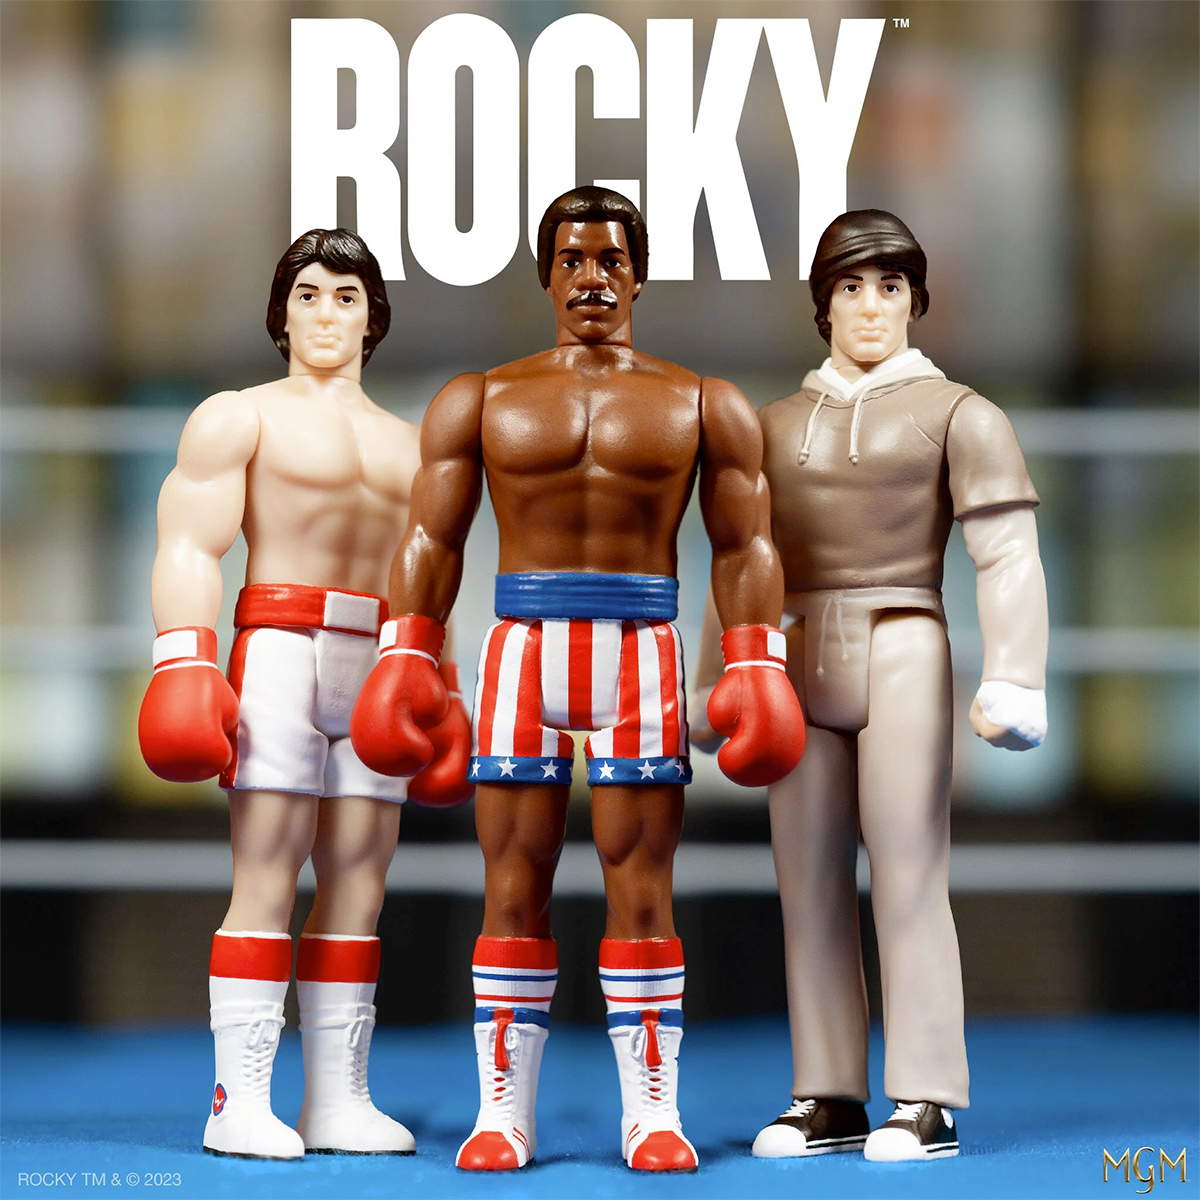 Action Figures ReAction Rocky, o Lutador 1976 de Sylvester Stallone